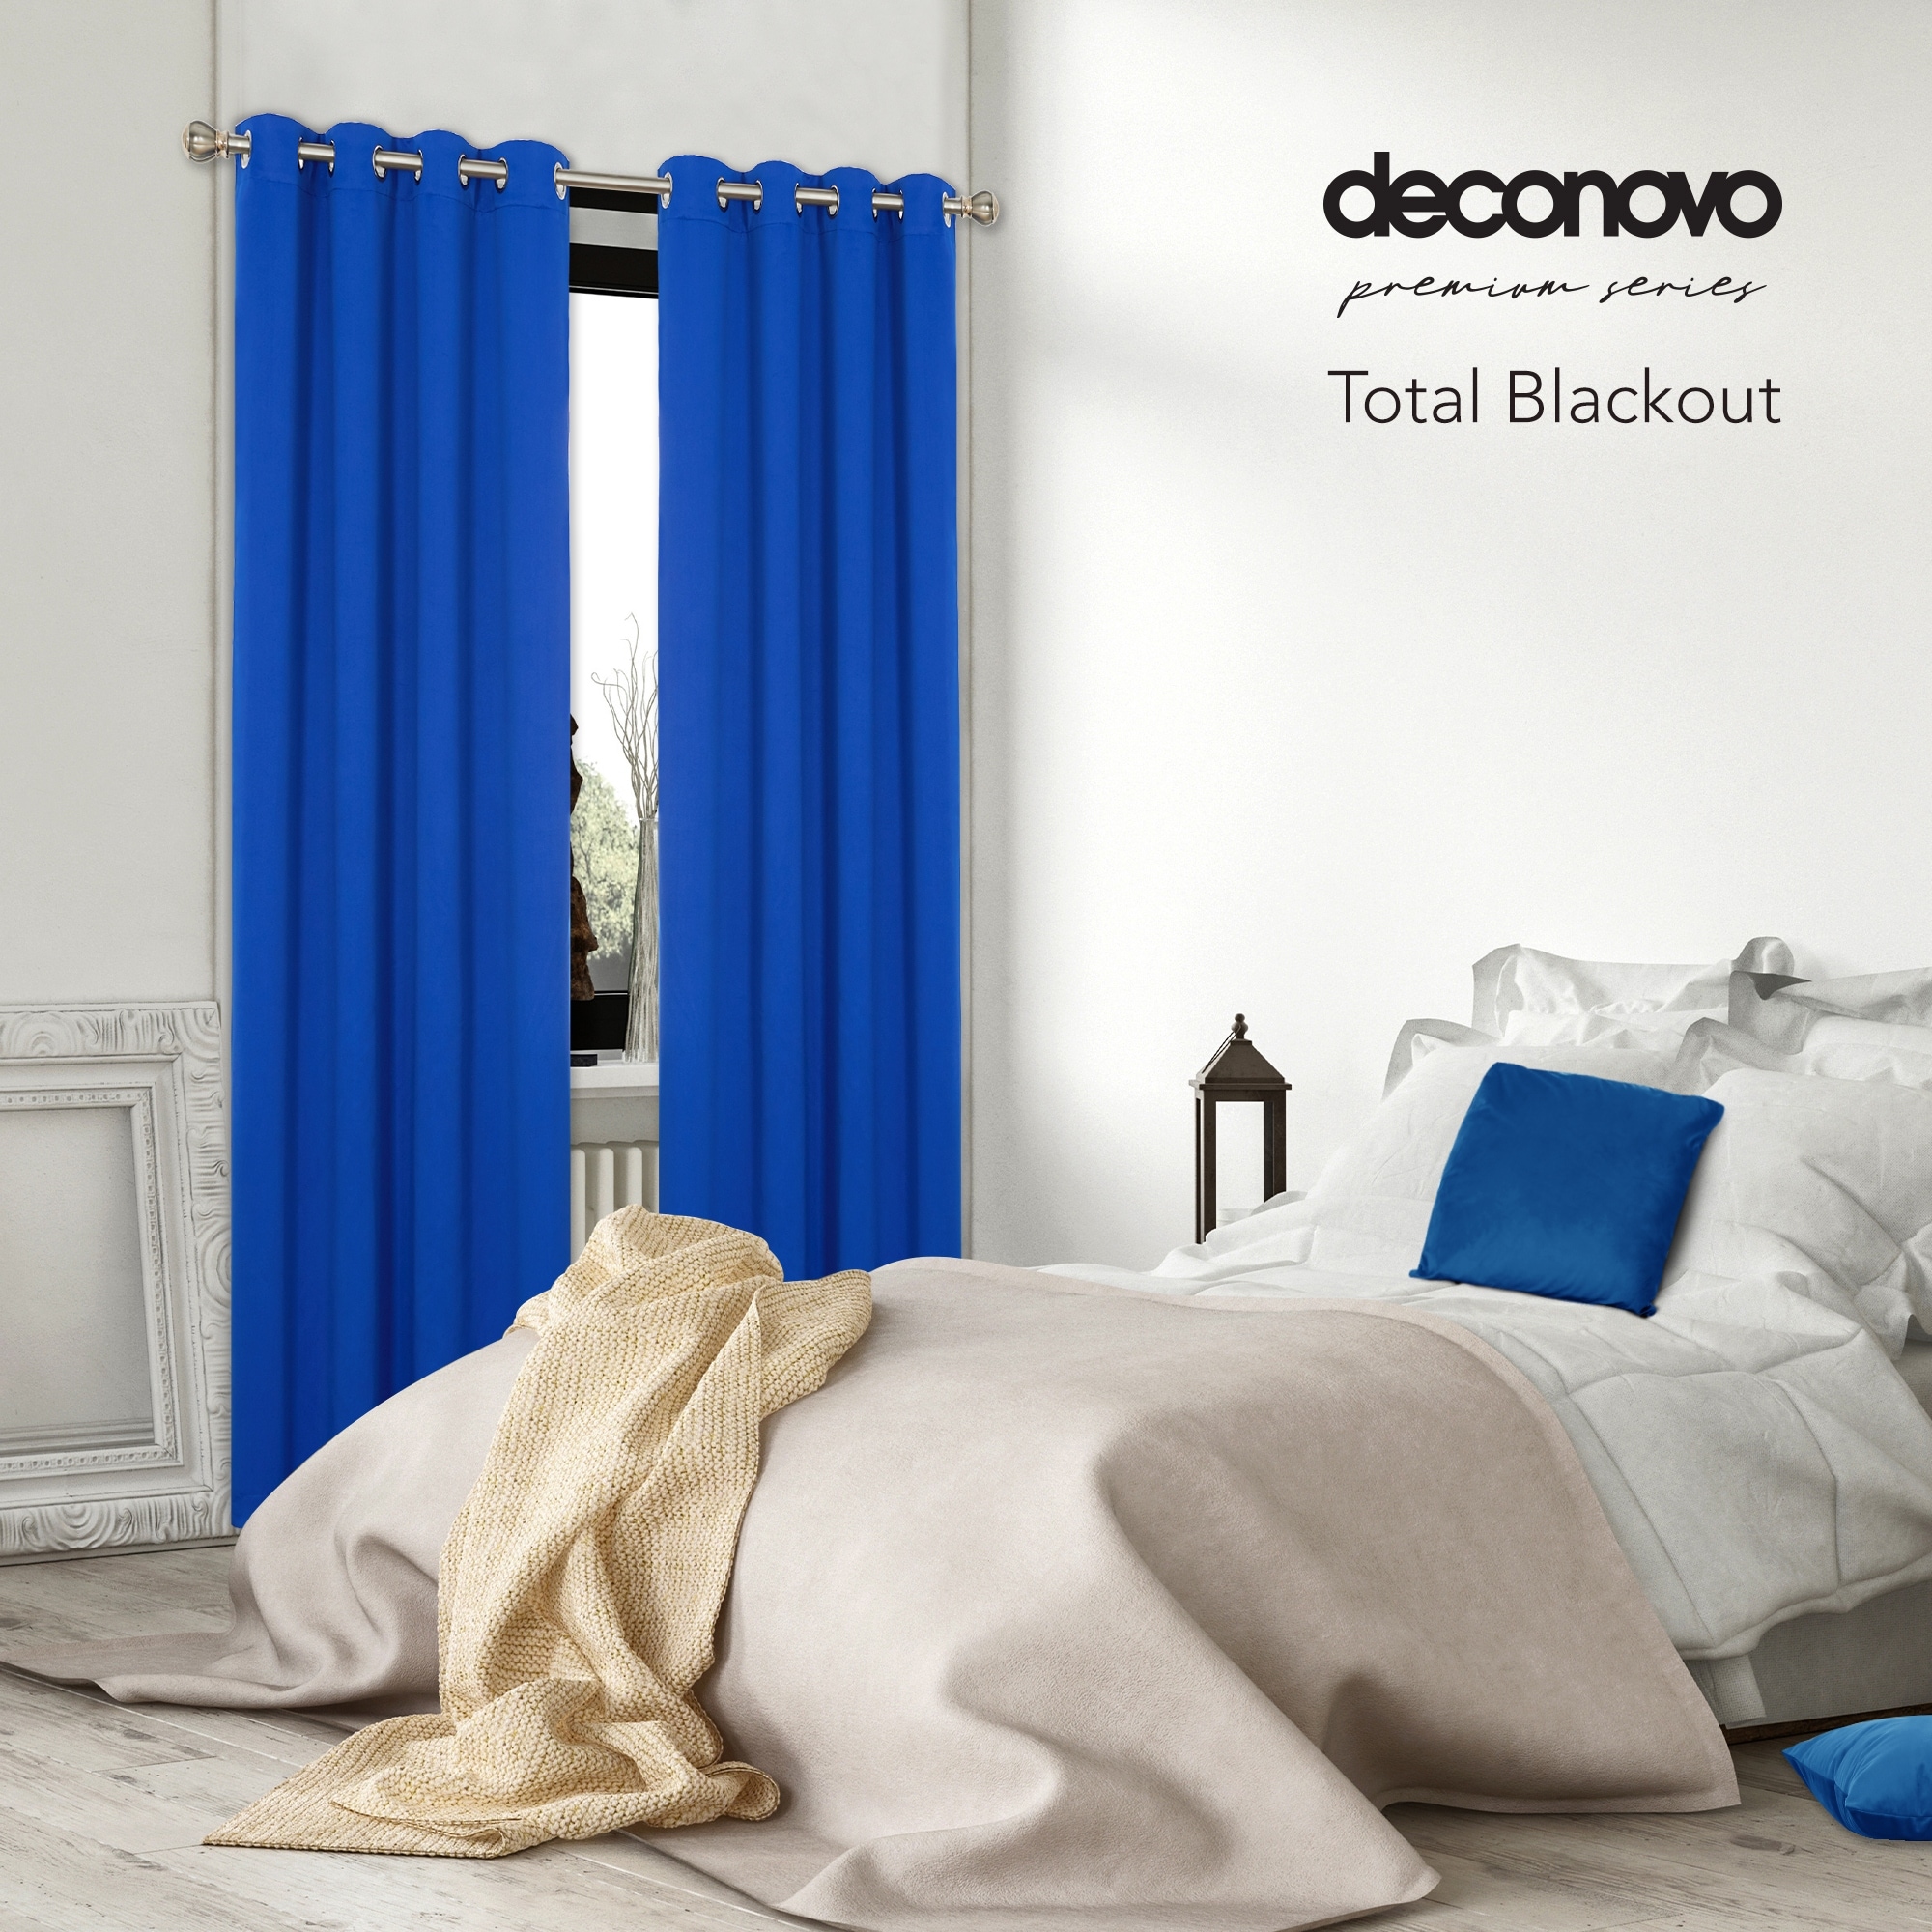 11 Best Blackout Curtains for Room Darkening in 2023: Deconovo, Nicetown